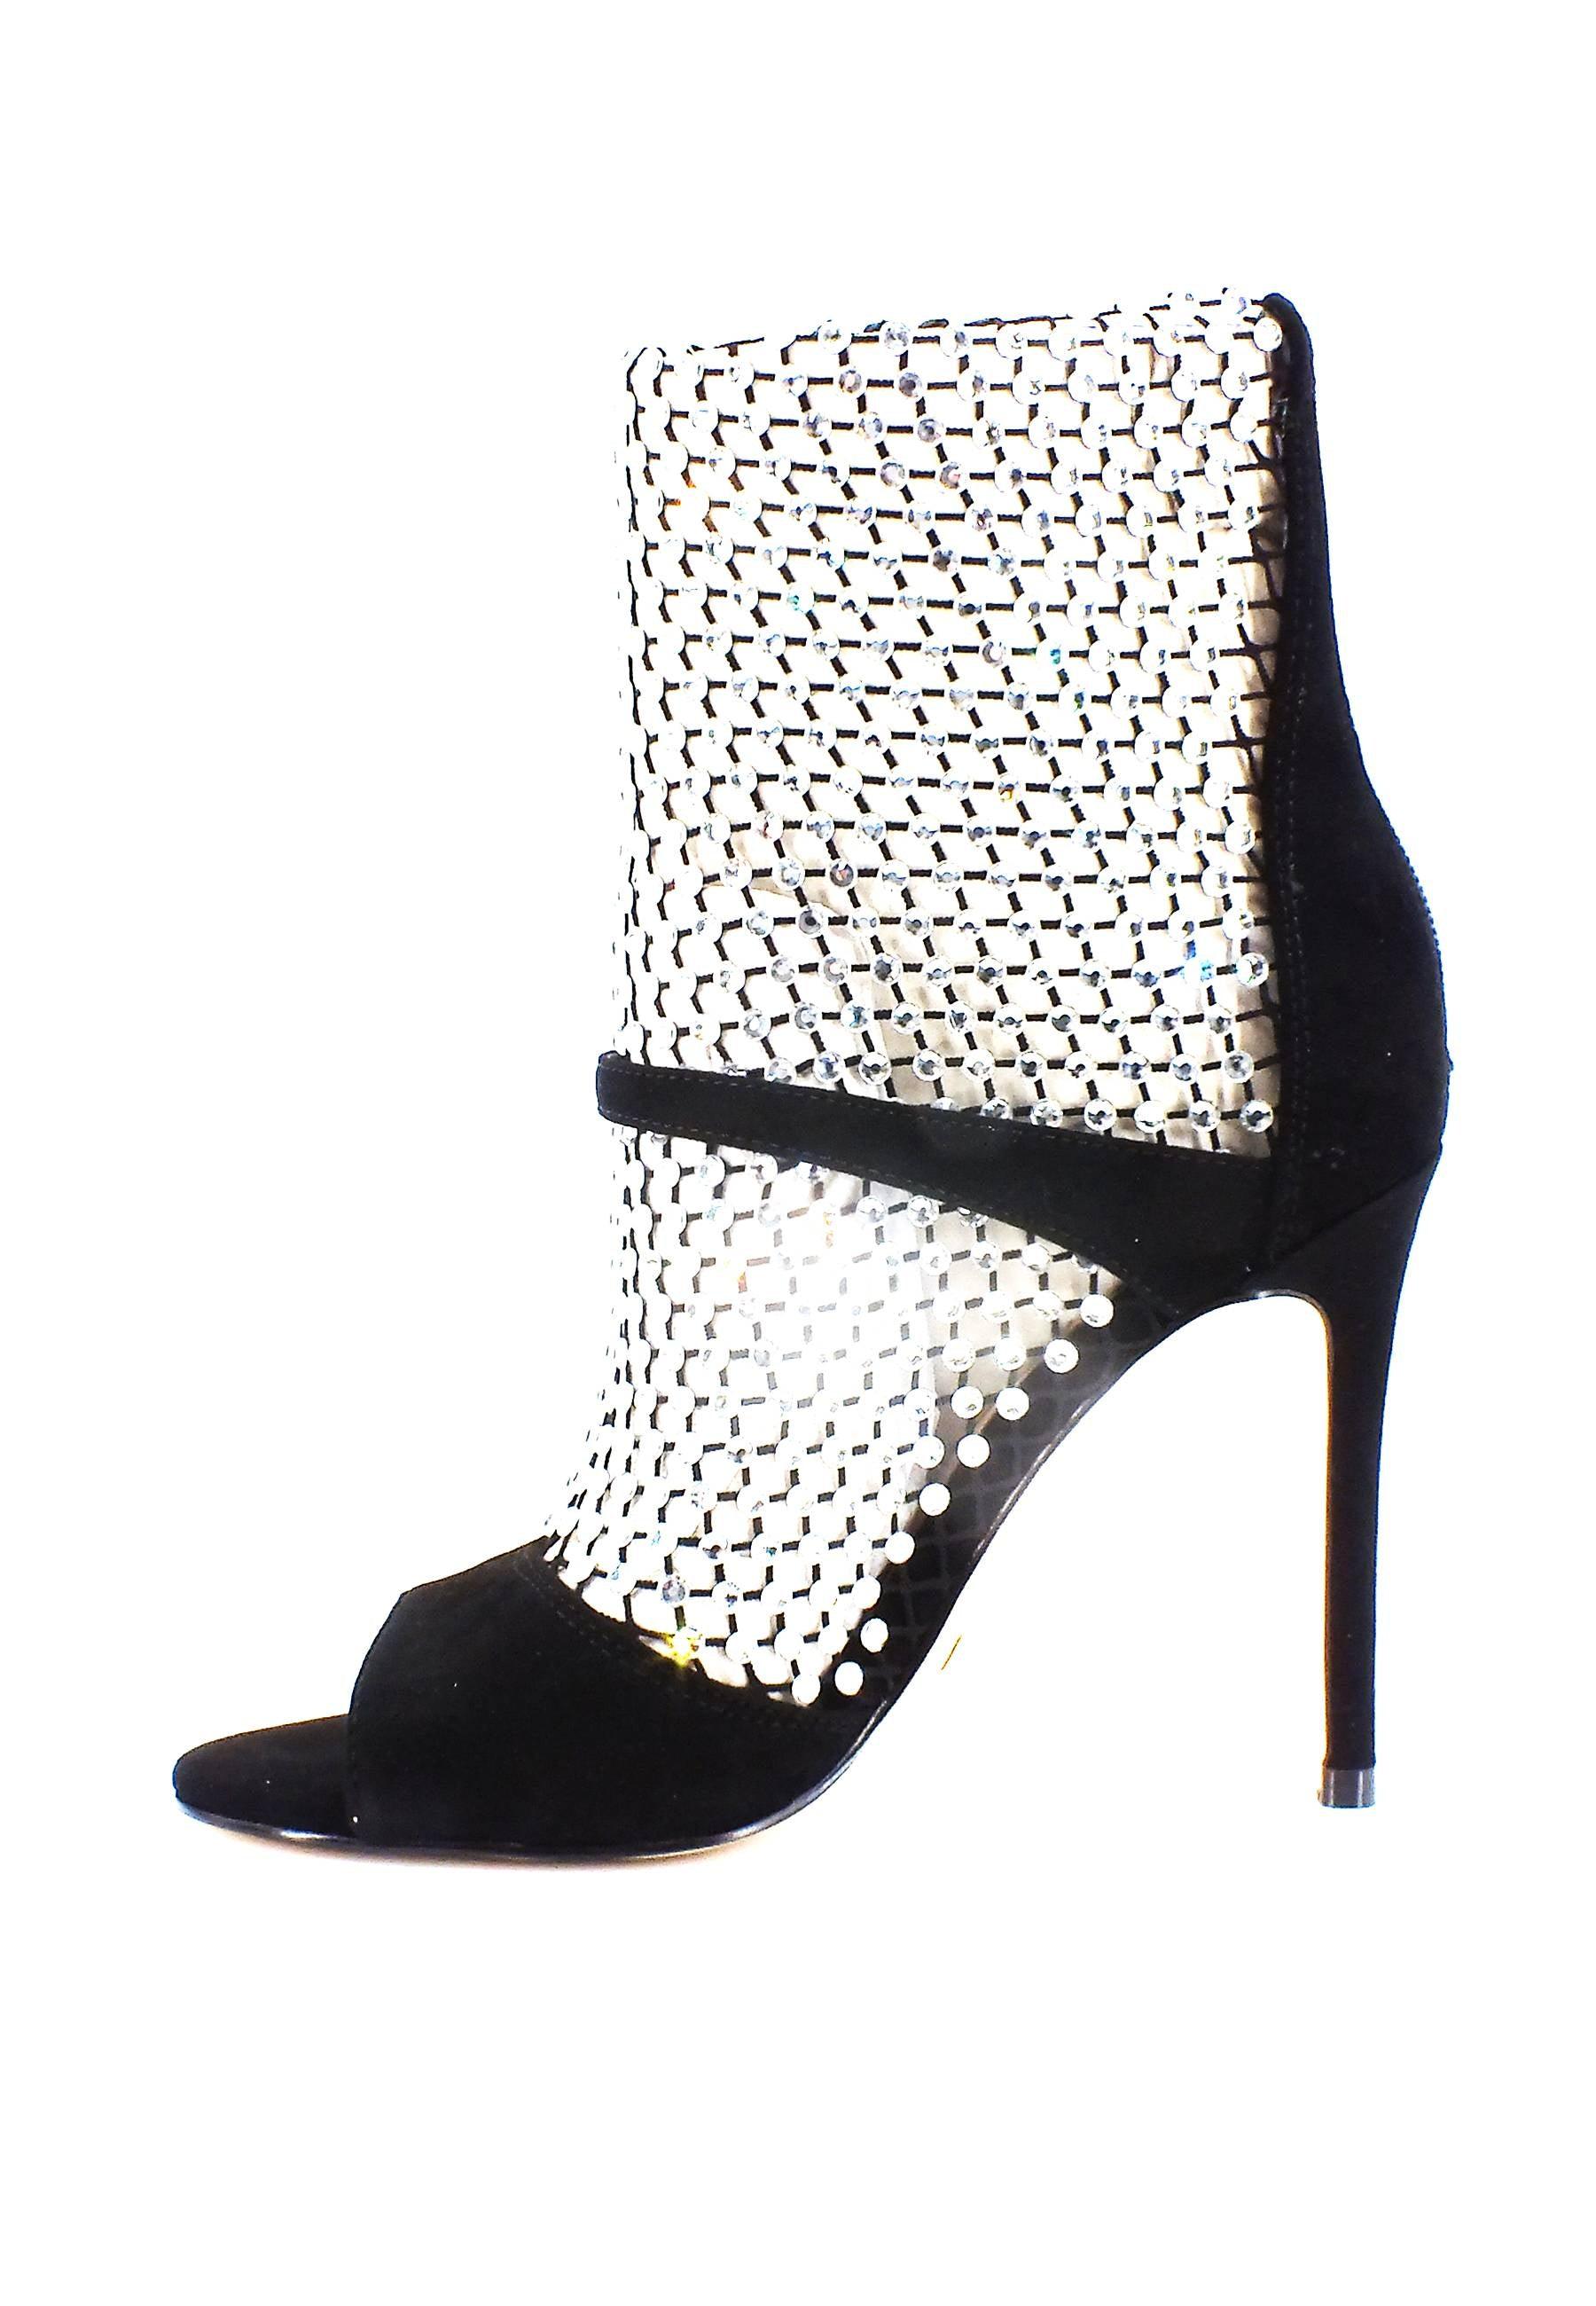 GUESS Sandalo Strass Donna Black FL5DYNFAB10 - Sandrini Calzature e Abbigliamento